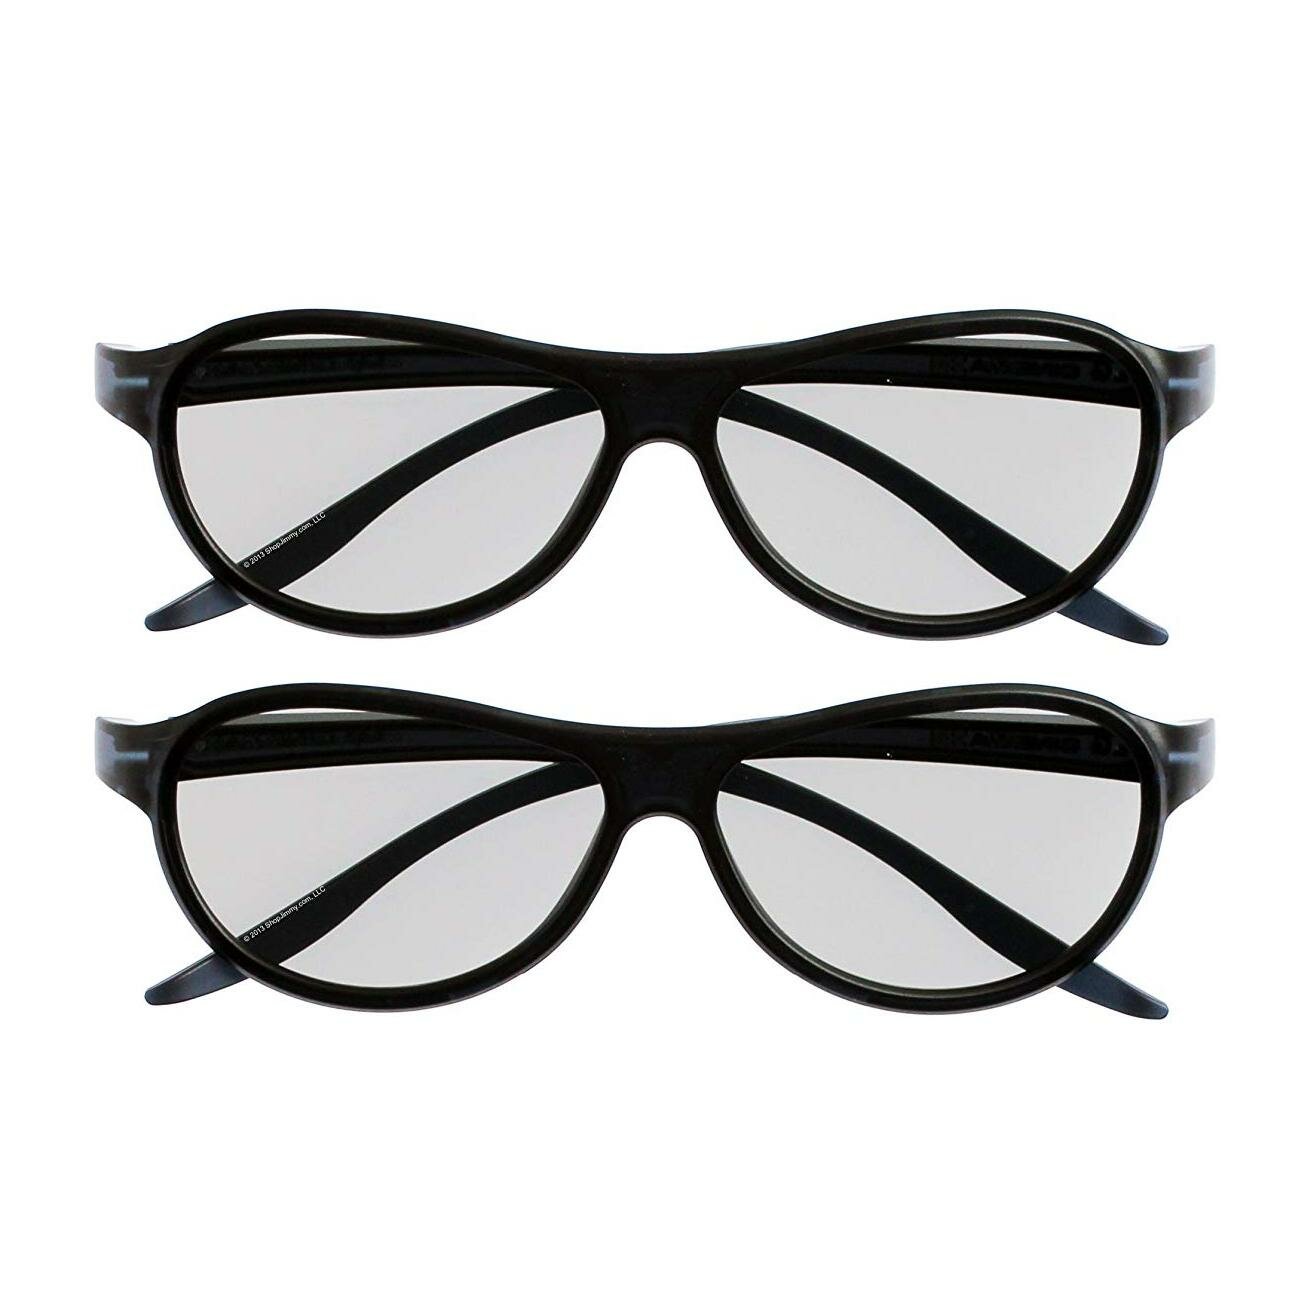 3D очки LG AG-F310 - 2 штуки черные для телевизоров с пассивным типом 3D универсальные для кинотеатра